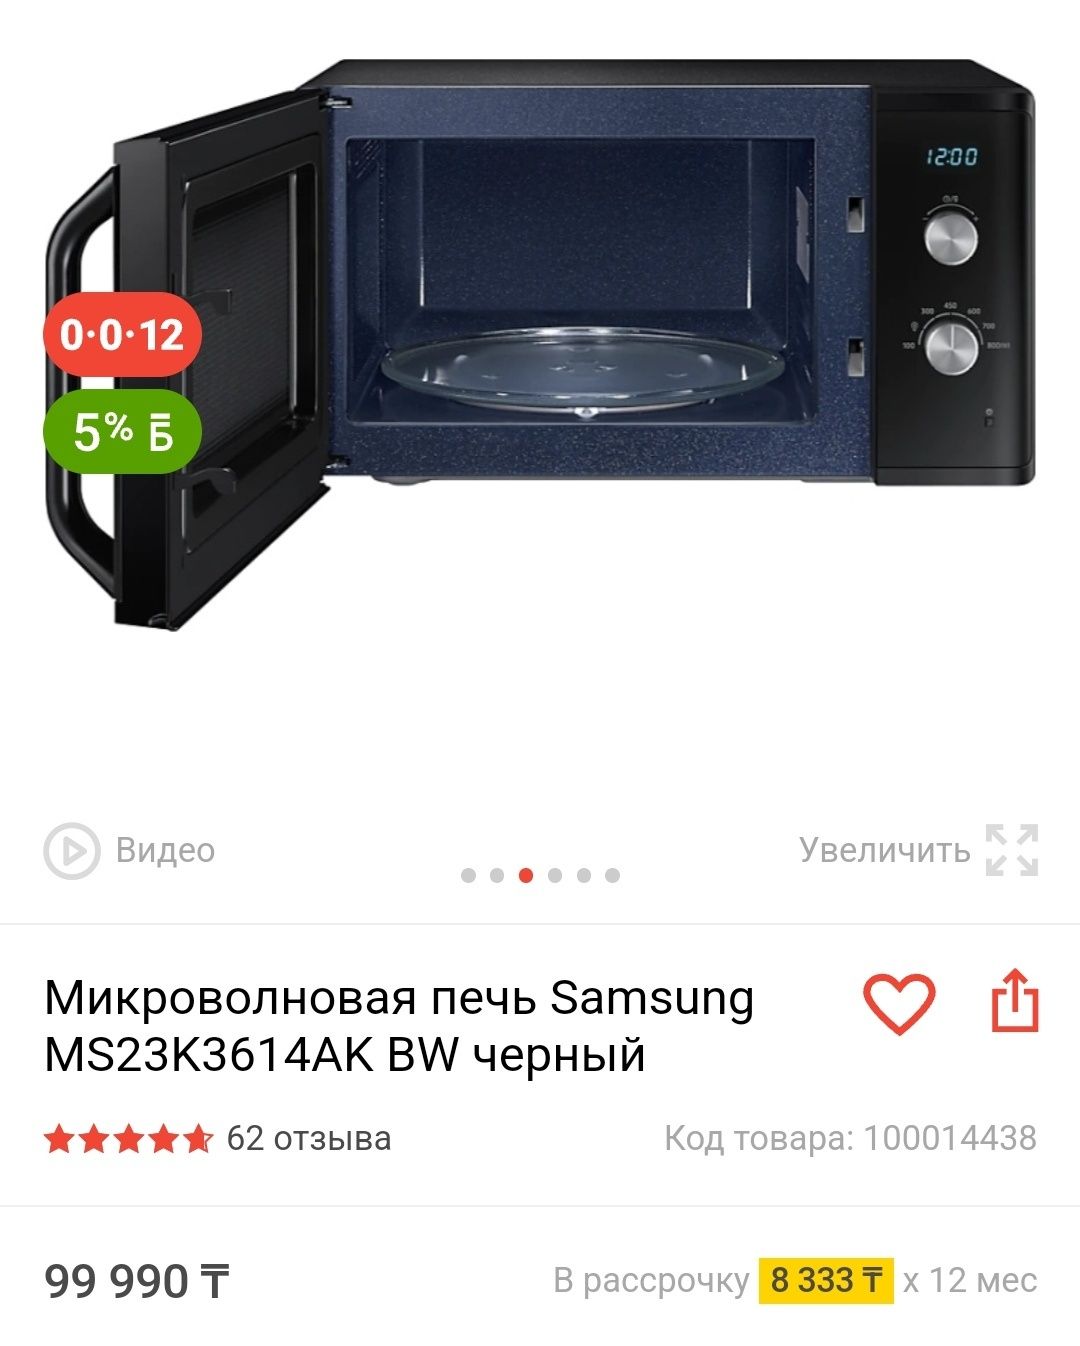 Samsung НОВАЯ микроволновая печь